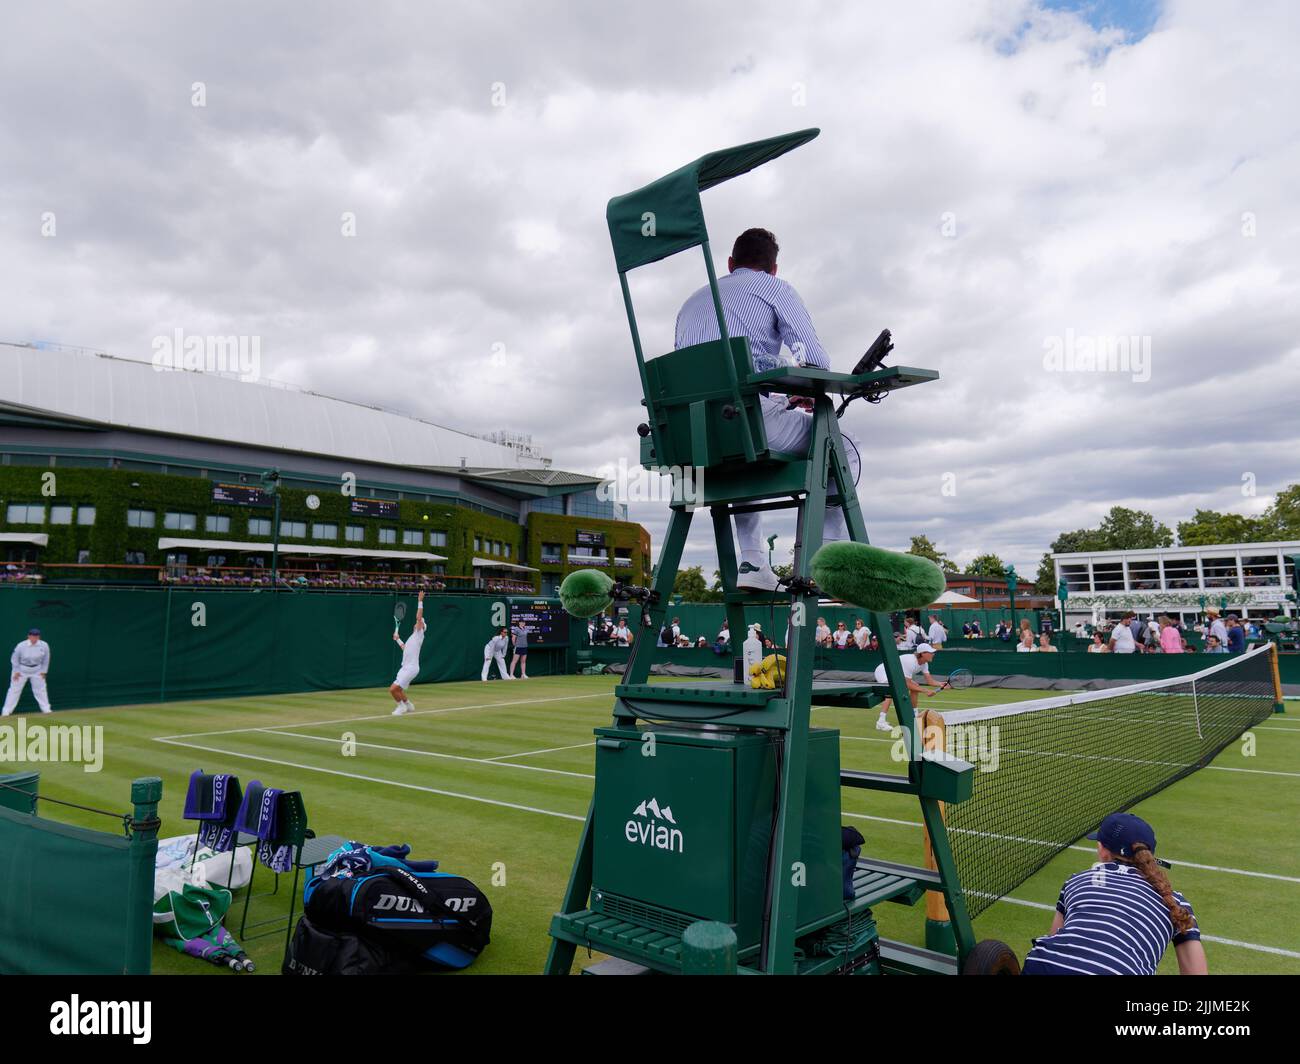 Wimbledon, Grand Londres, Angleterre, 02 juillet 2022: Championnat de tennis de Wimbledon. Le joueur sert pendant un double match avec le centre de l'image de l'arbitre. Banque D'Images